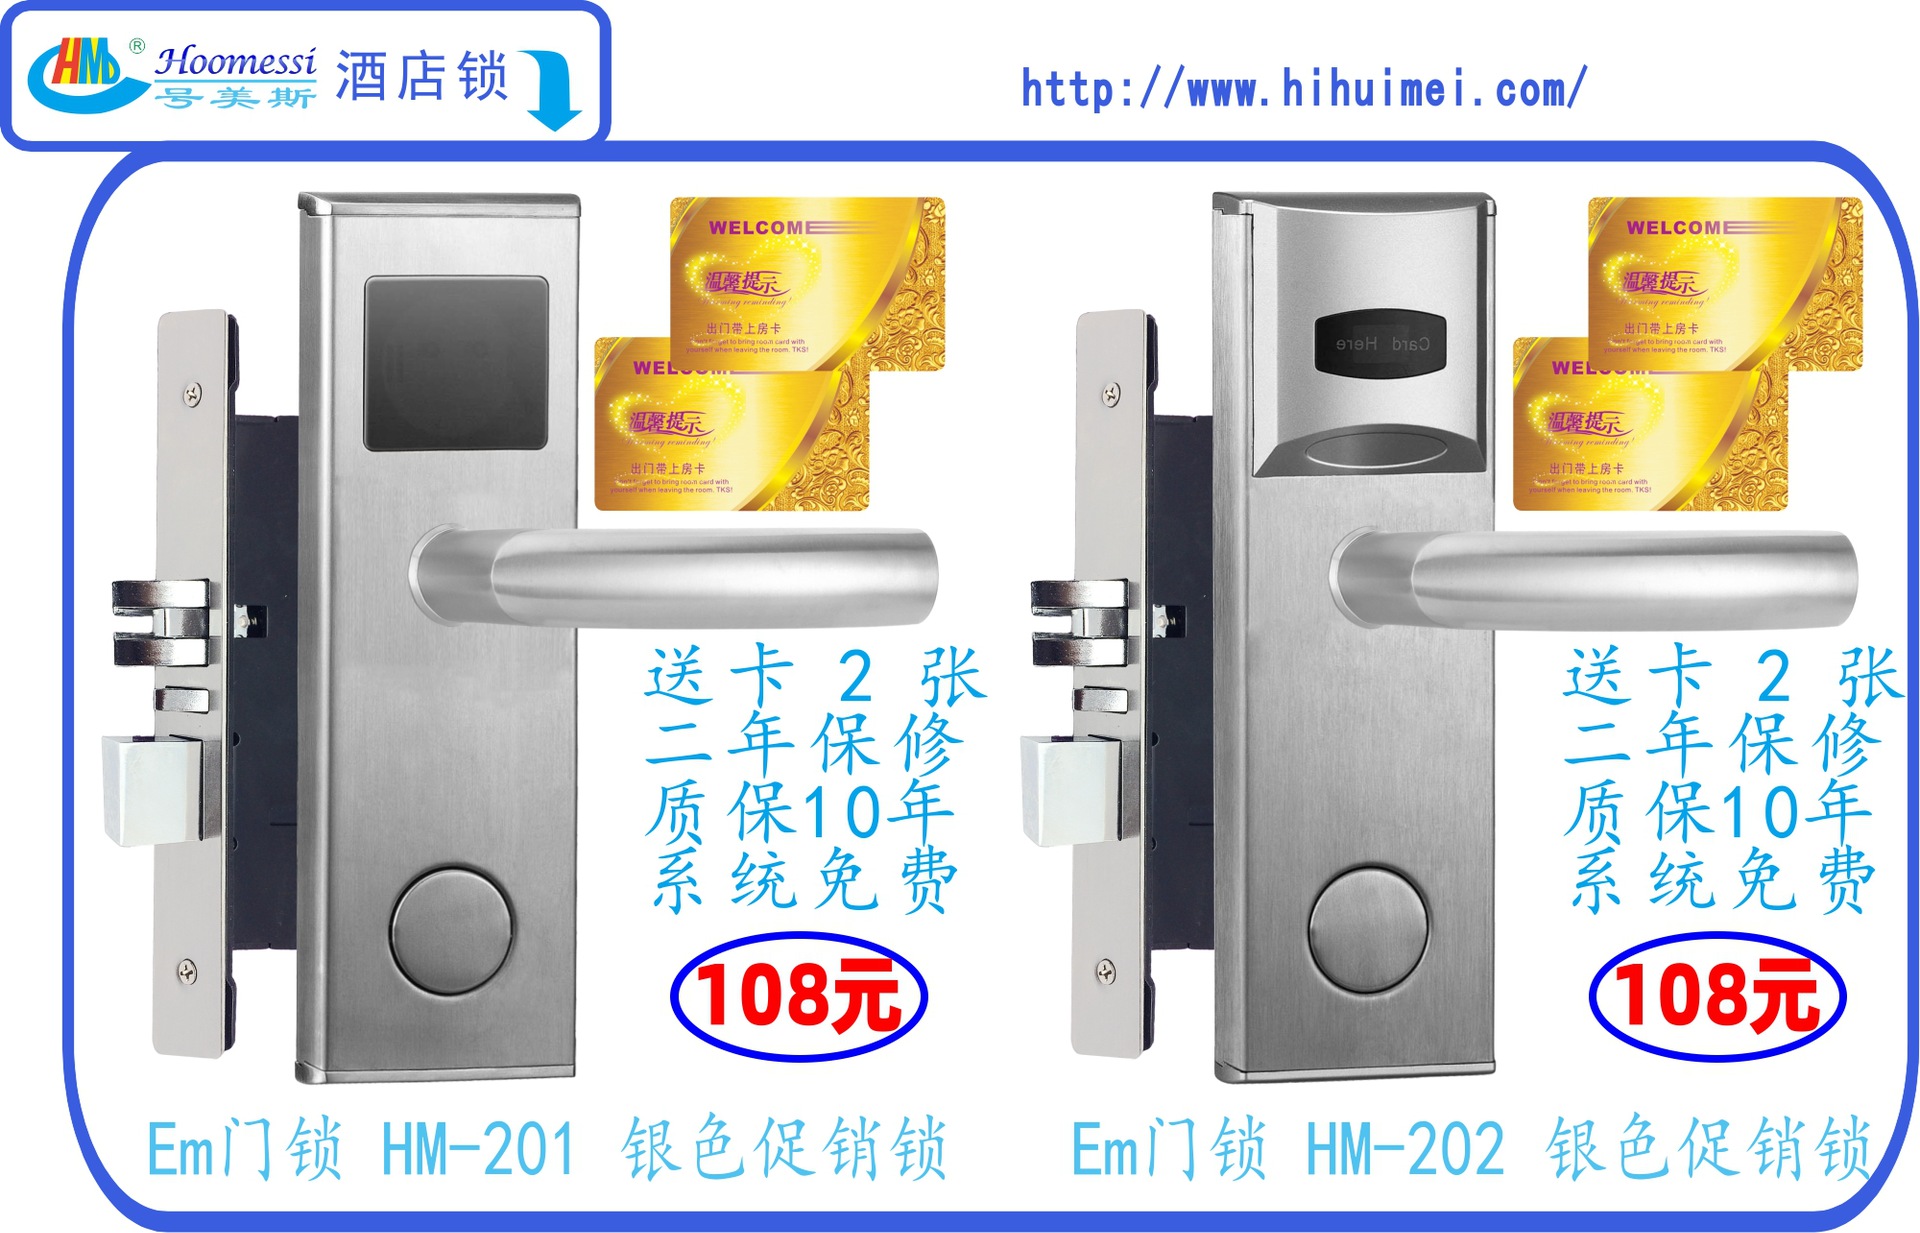 HM-201 202银色特价锁 108 45的仍 另载中.j